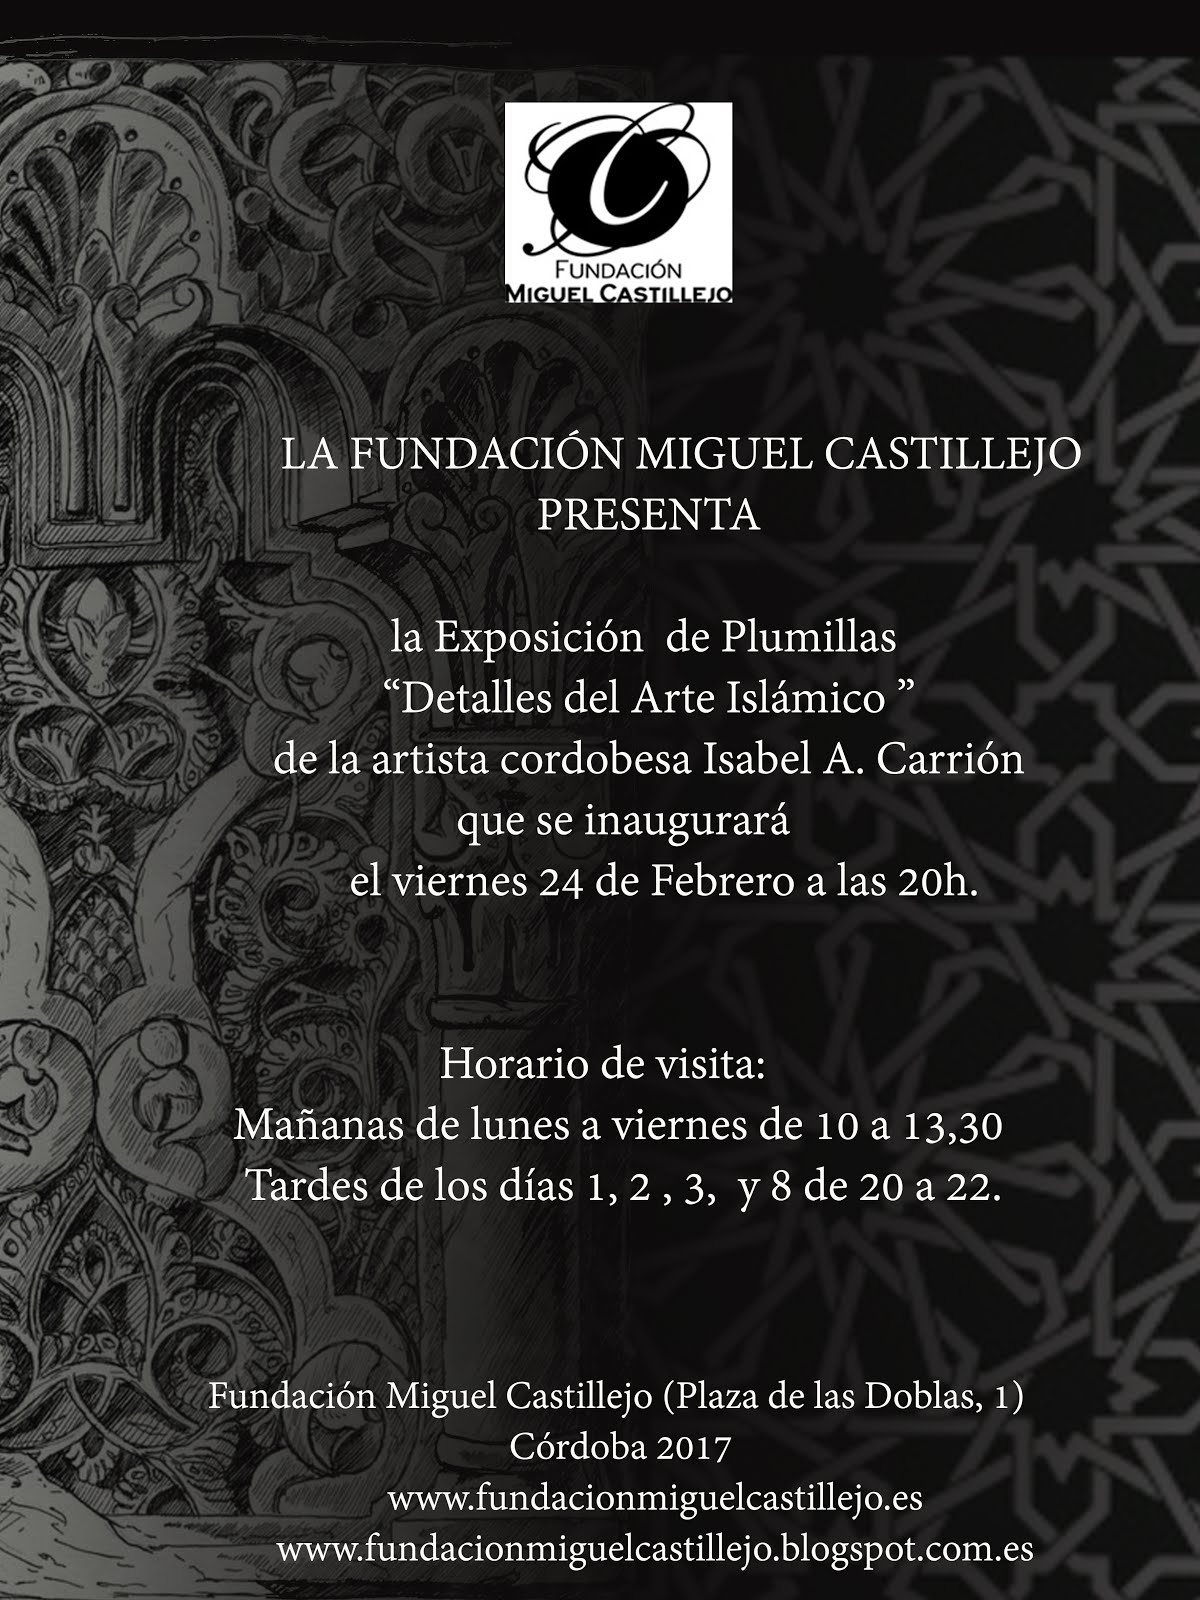 Exposiciones 2017: Fundación Miguel Castillejo hasta el 15 de marzo.